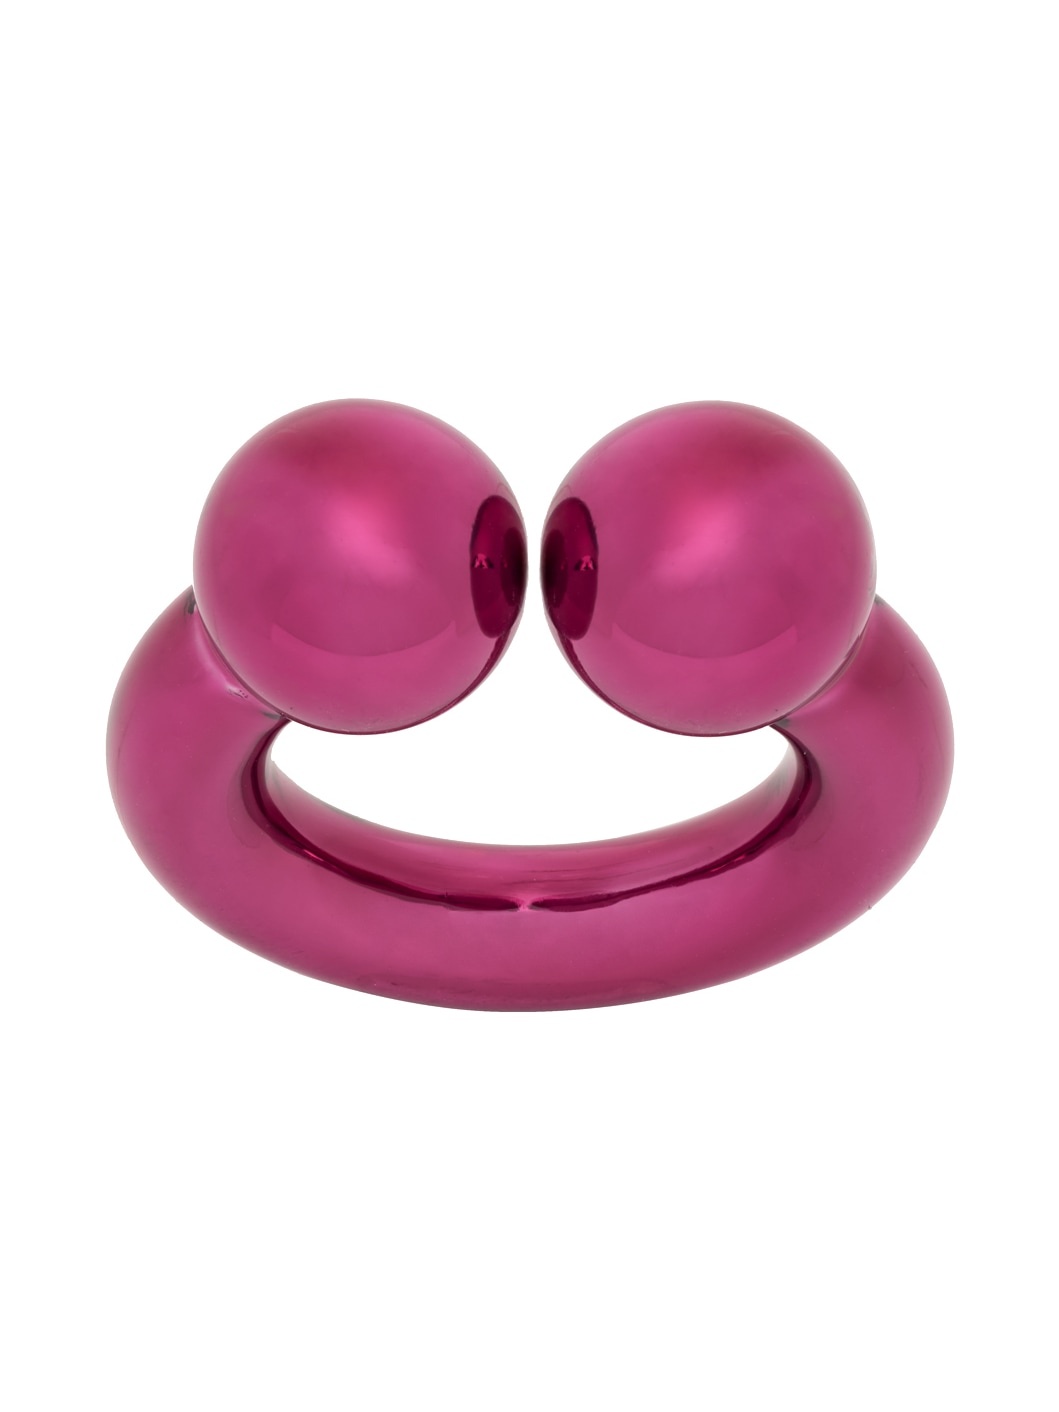 Pink Piercing Ring - 1